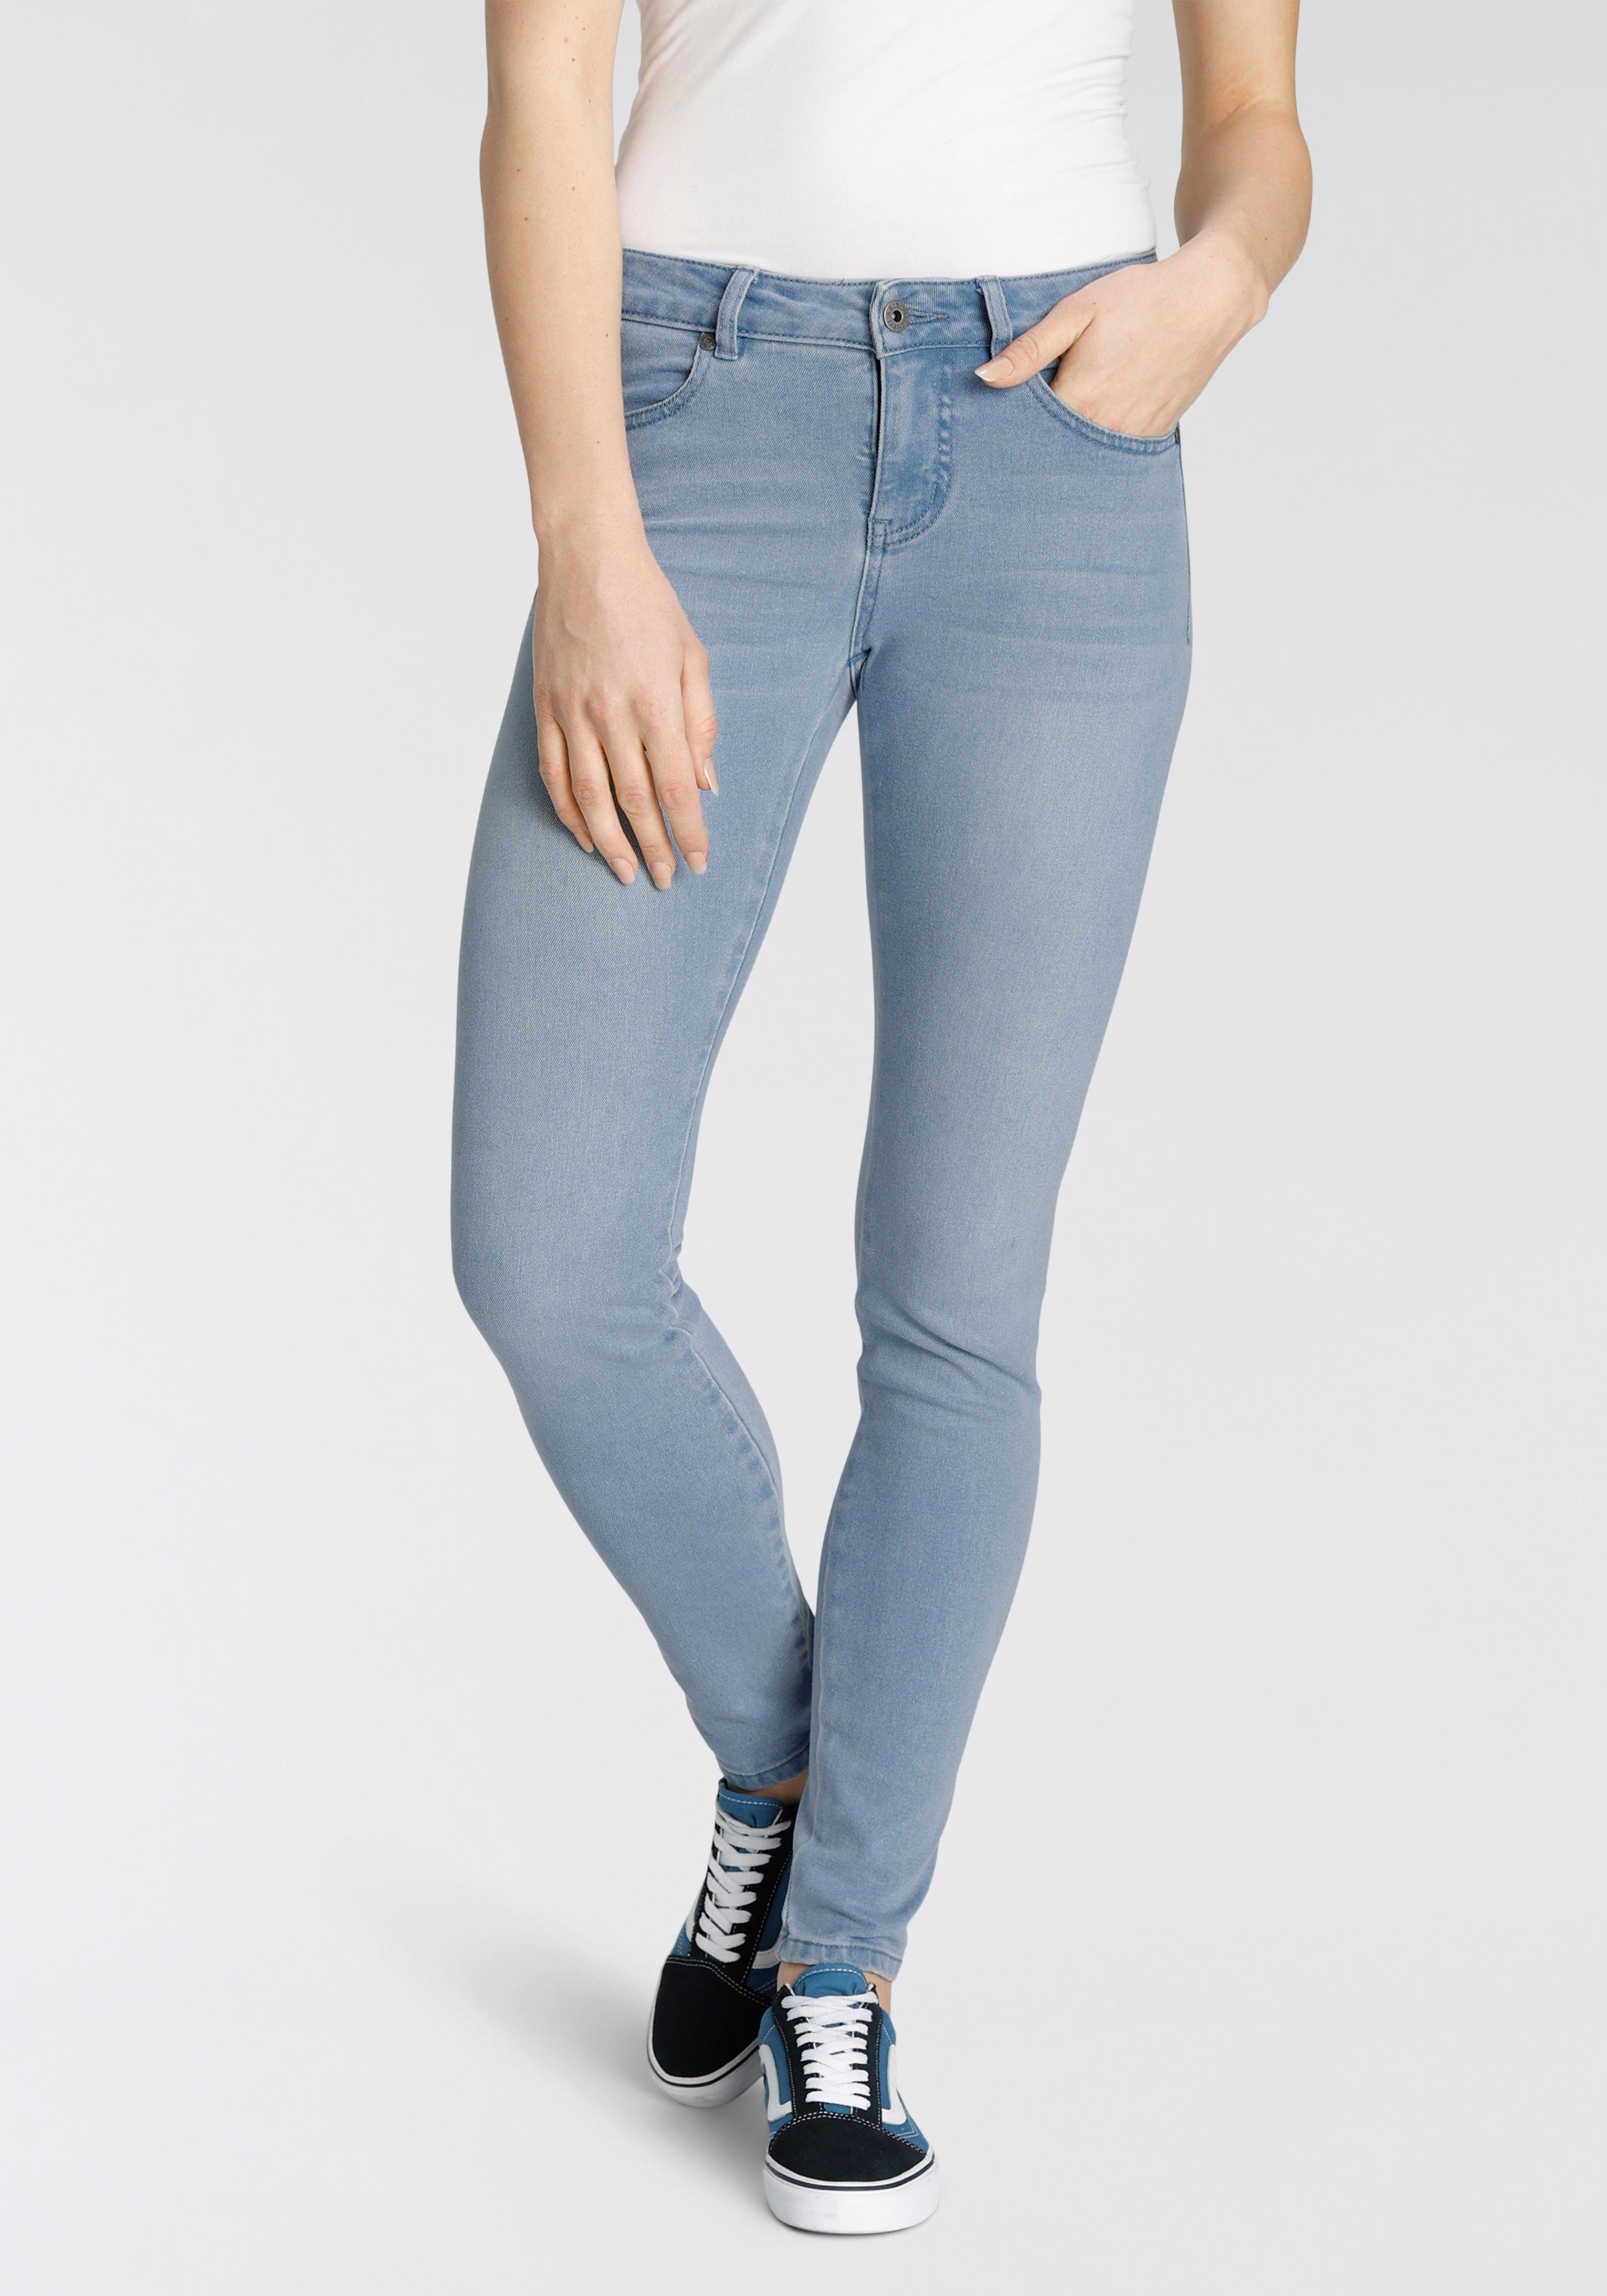 Arizona Röhrenjeans Jeans ohne Seitennaht ohne Seitennaht